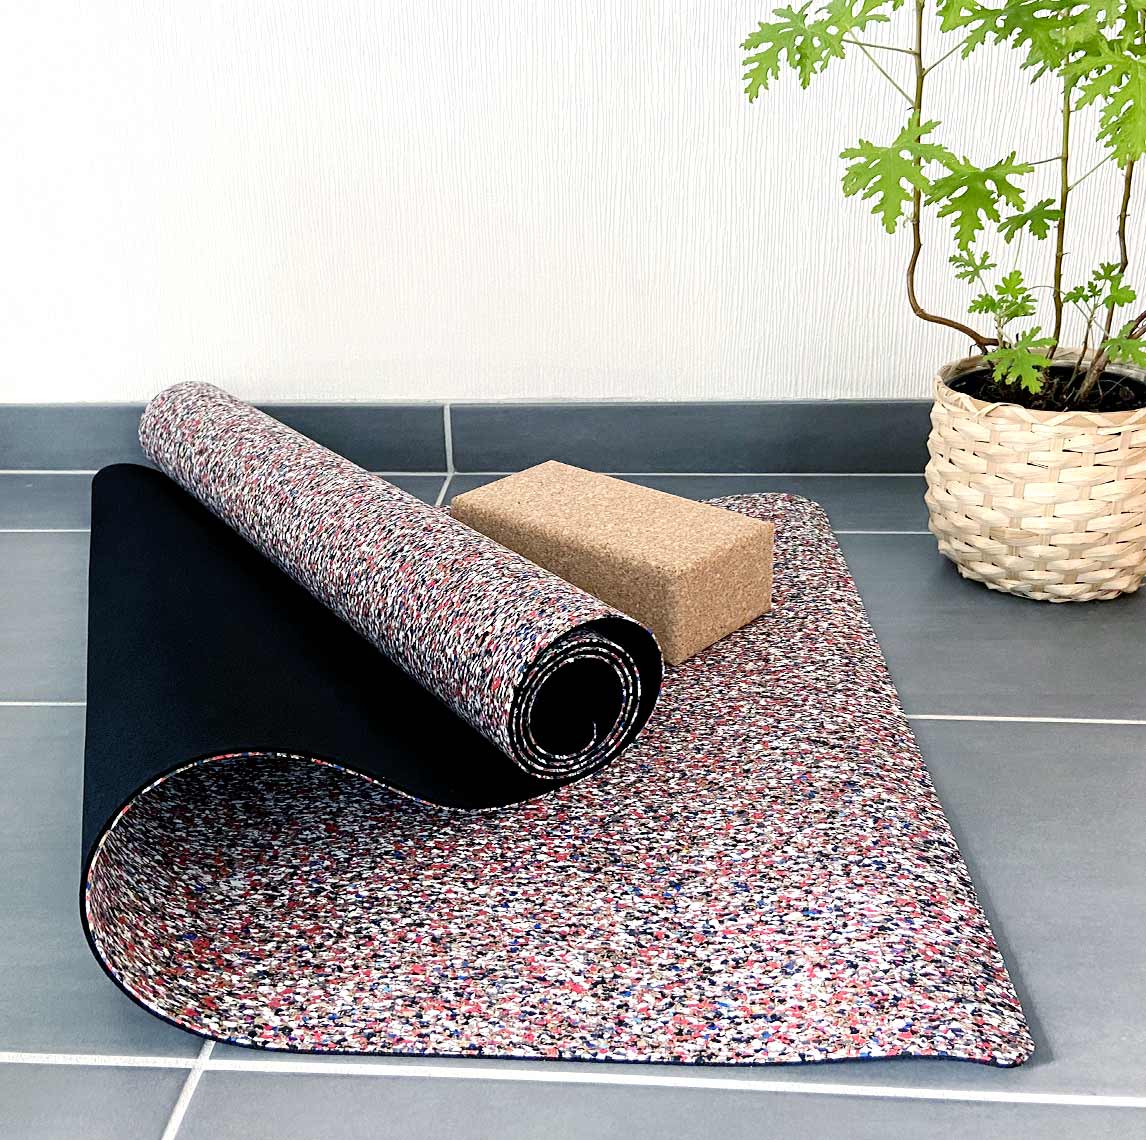 Tapis de yoga en liège et caoutchouc recyclés - vue posé à plat